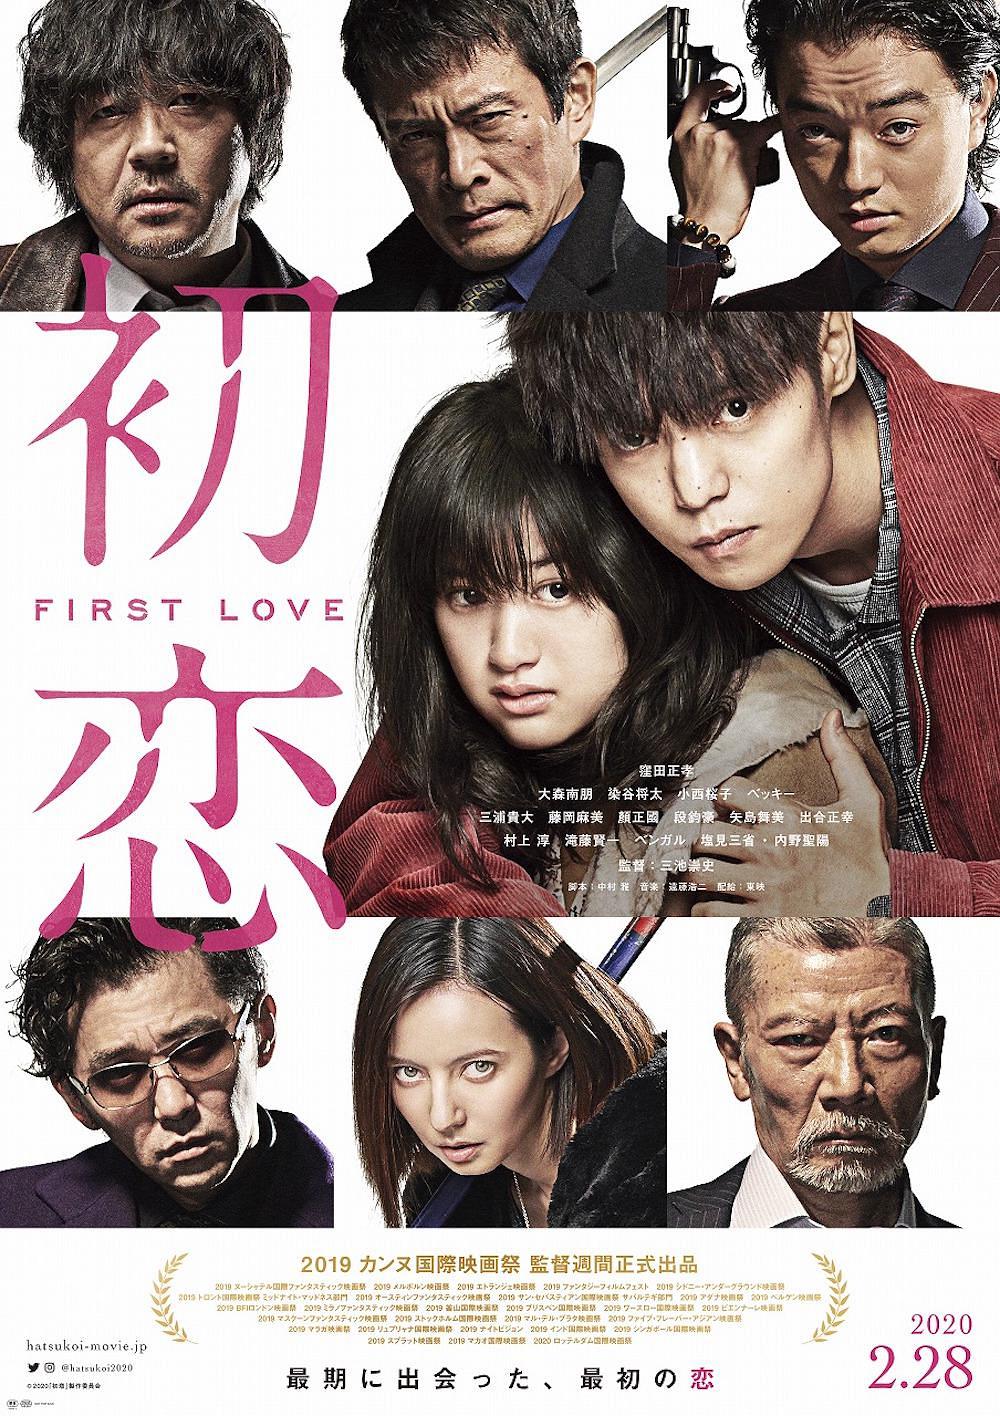 初恋 First.Love.2019.JAPANESE.1080p.BluRay.REMUX.AVC.DTS-HD.MA.5.1-FGT 17.81GB-1.png